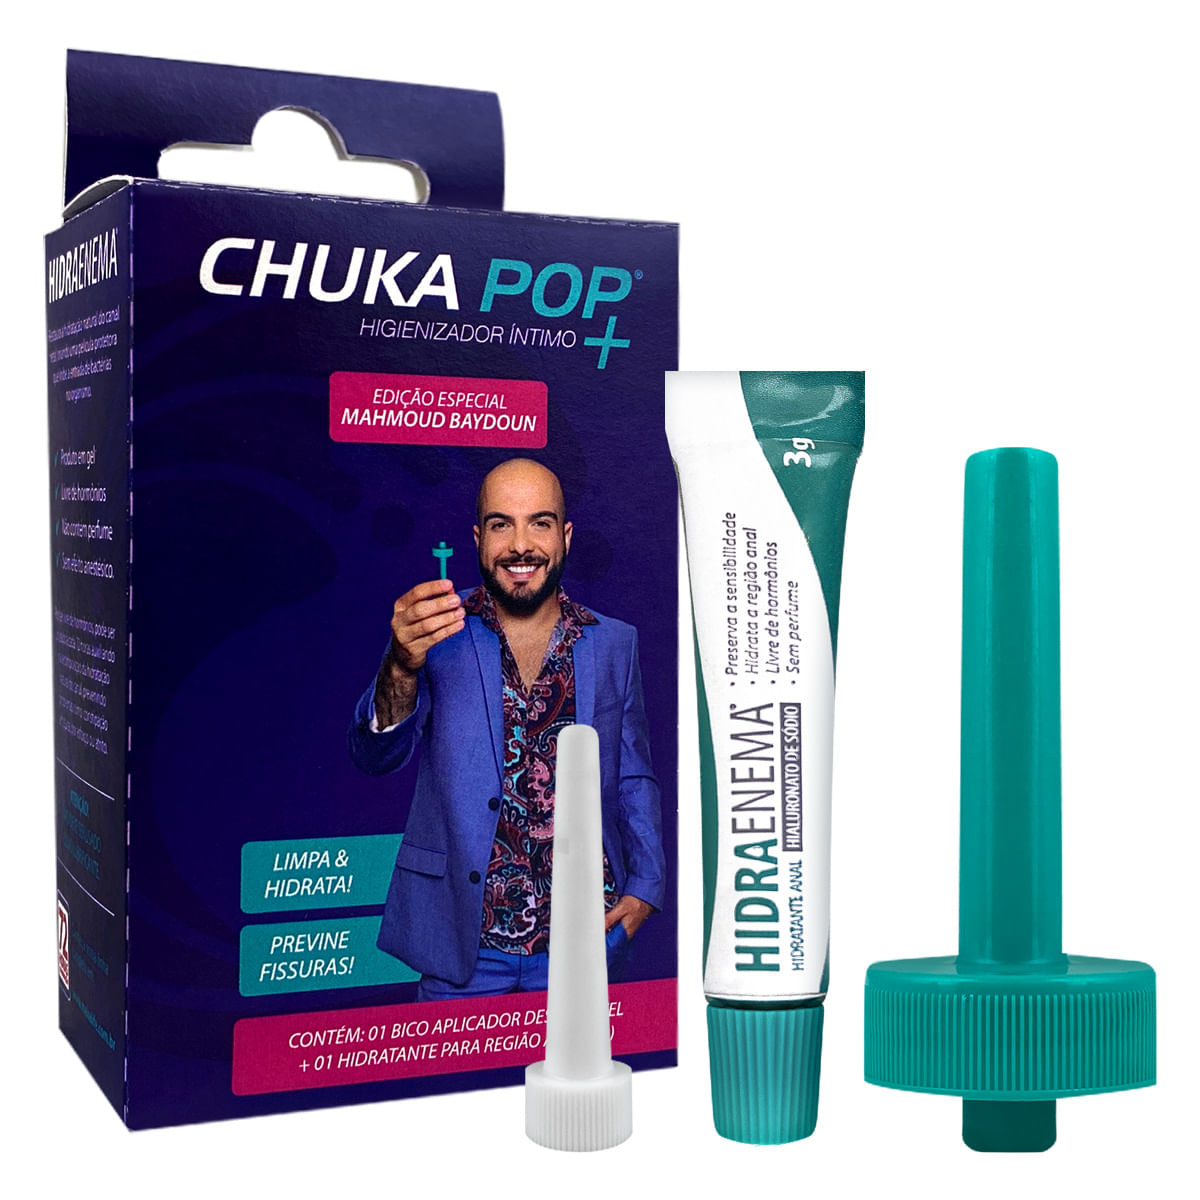 Chuka Pop + Higienizador Íntimo Edição Especial Mahmoud Baydoun Make Life